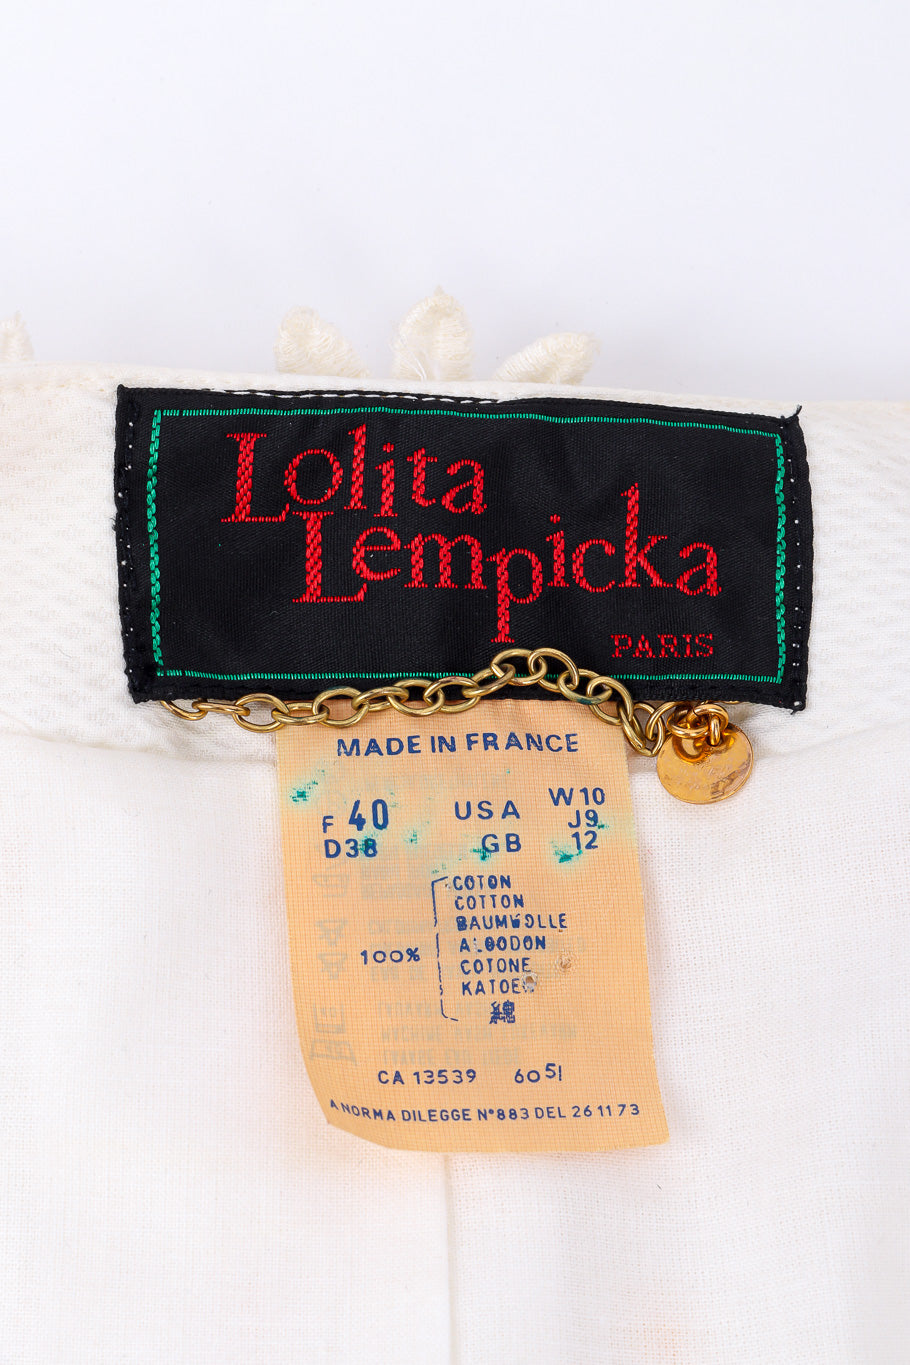 Daisy appliqué jacket by Lolita Lempicka label @recessla